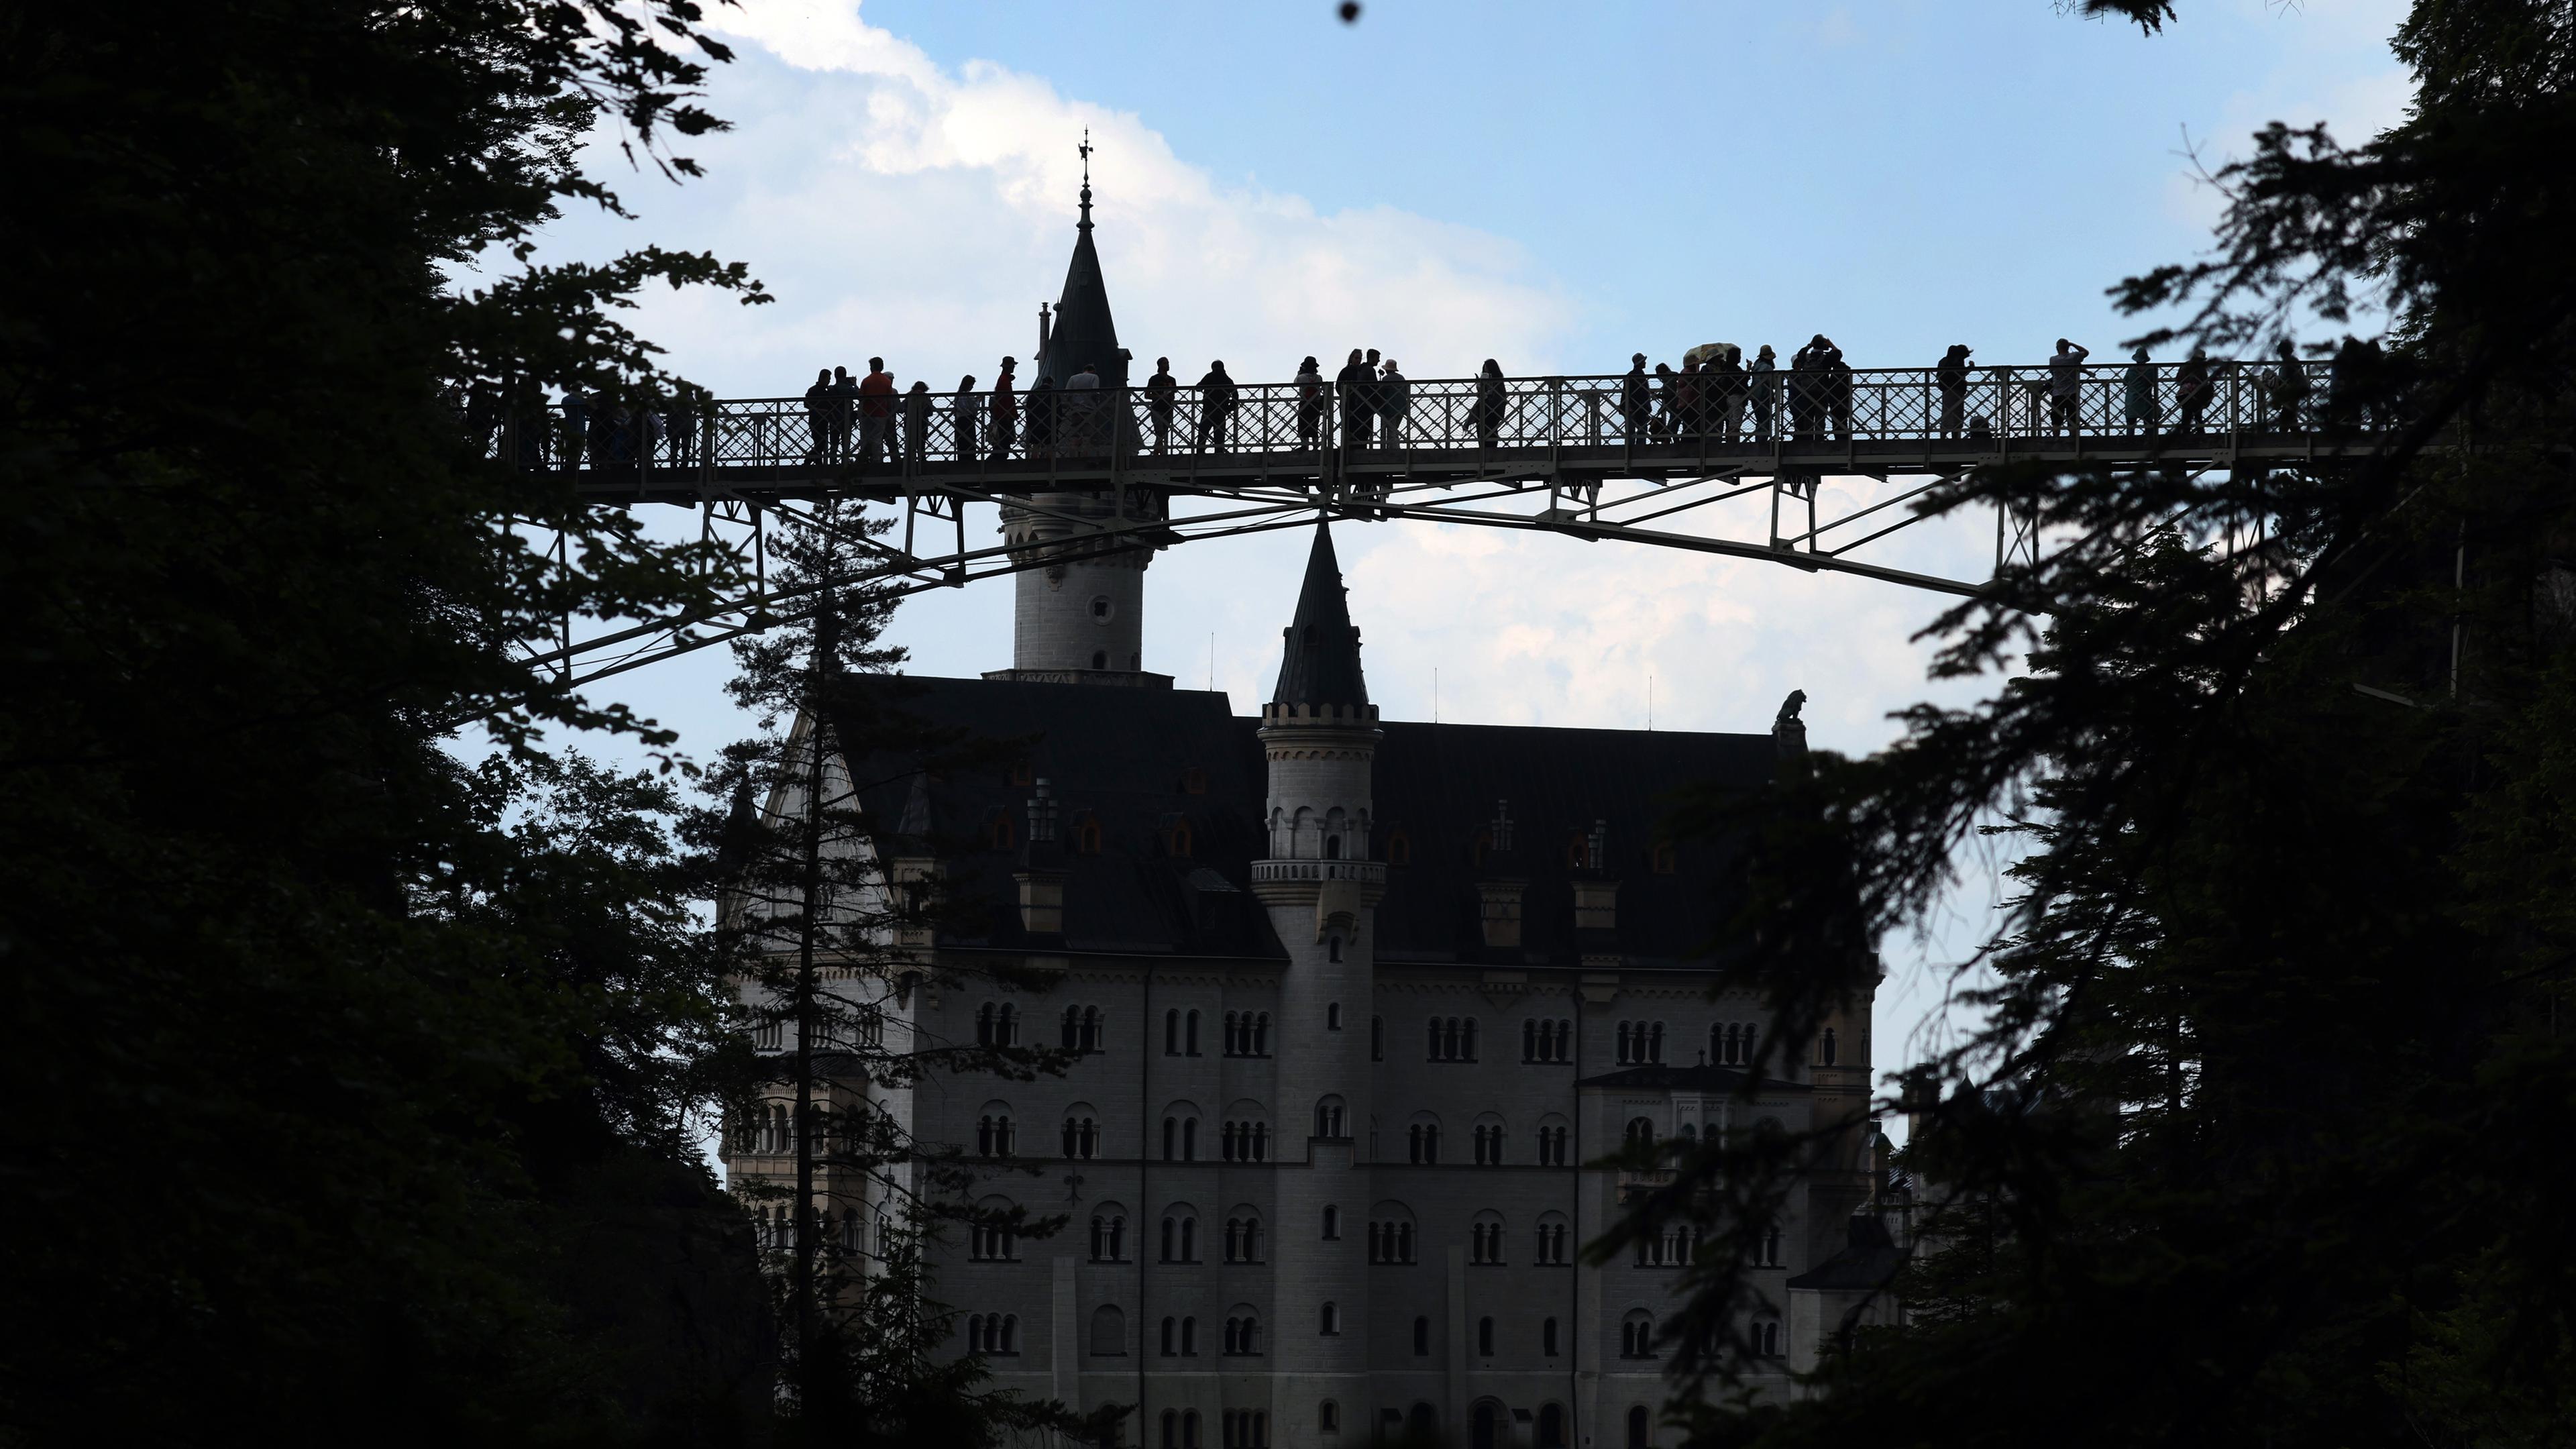 Archiv: Touristen stehen auf der Marienbrücke vor dem Schloss Neuschwanstein